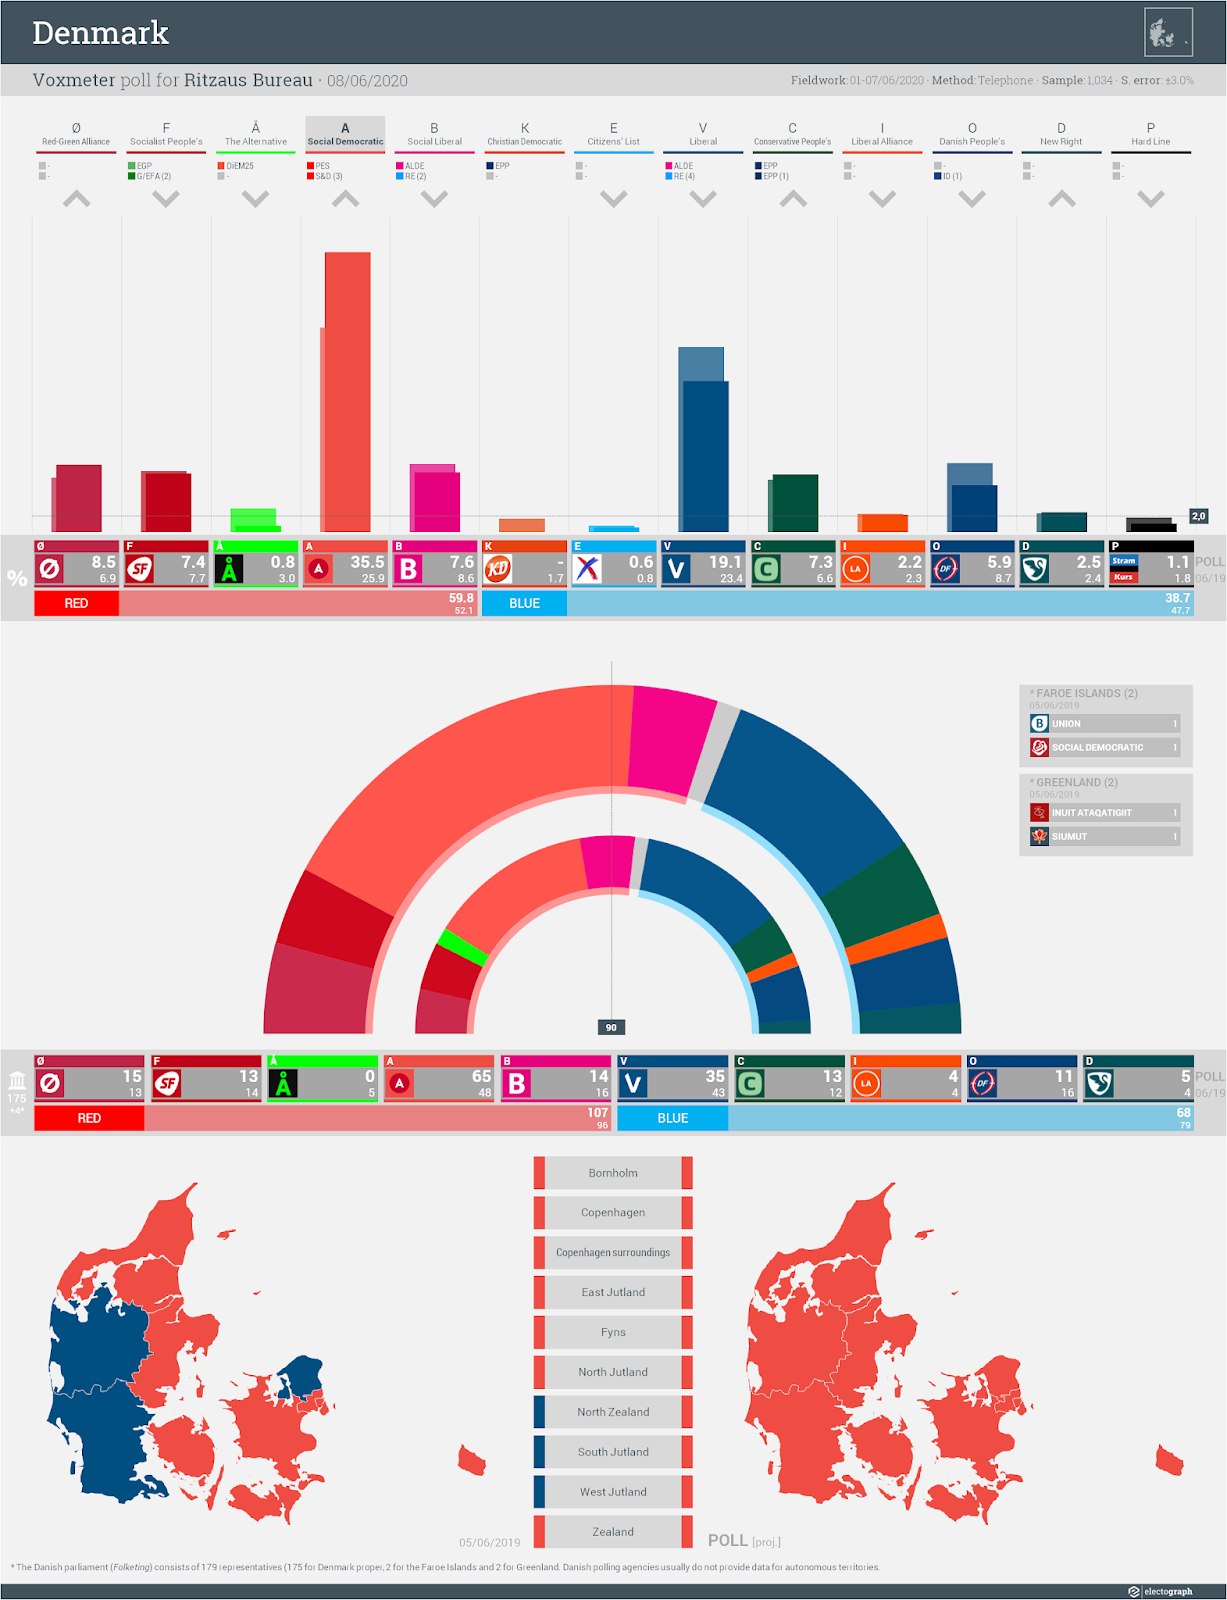 DENMARK: Voxmeter poll chart for Ritzaus Bureau, 8 June 2020